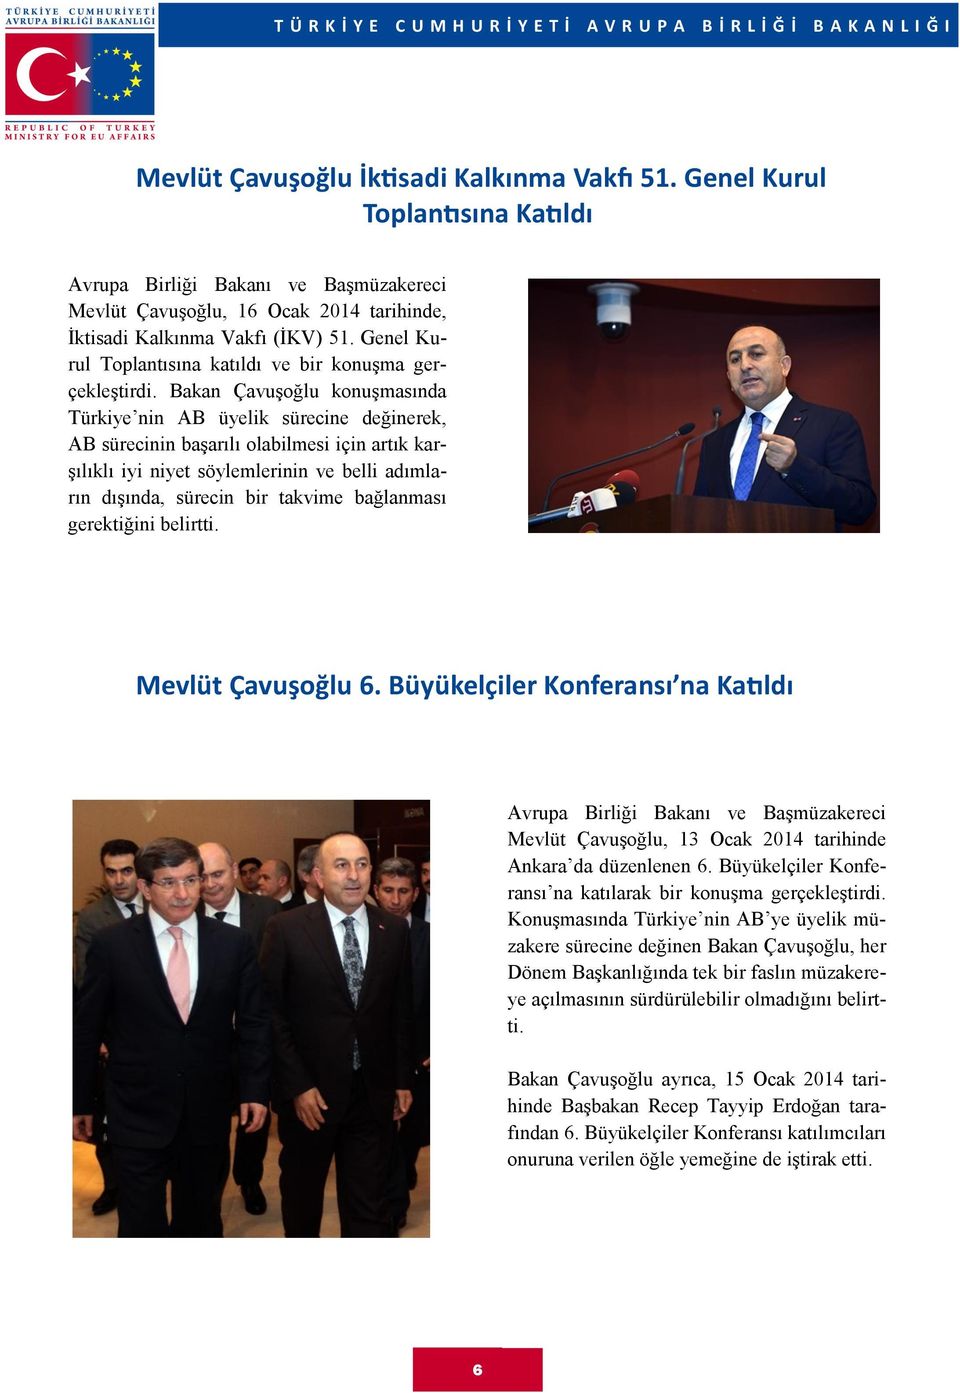 Bakan Çavuşoğlu konuşmasında Türkiye nin AB üyelik sürecine değinerek, AB sürecinin başarılı olabilmesi için artık karşılıklı iyi niyet söylemlerinin ve belli adımların dışında, sürecin bir takvime